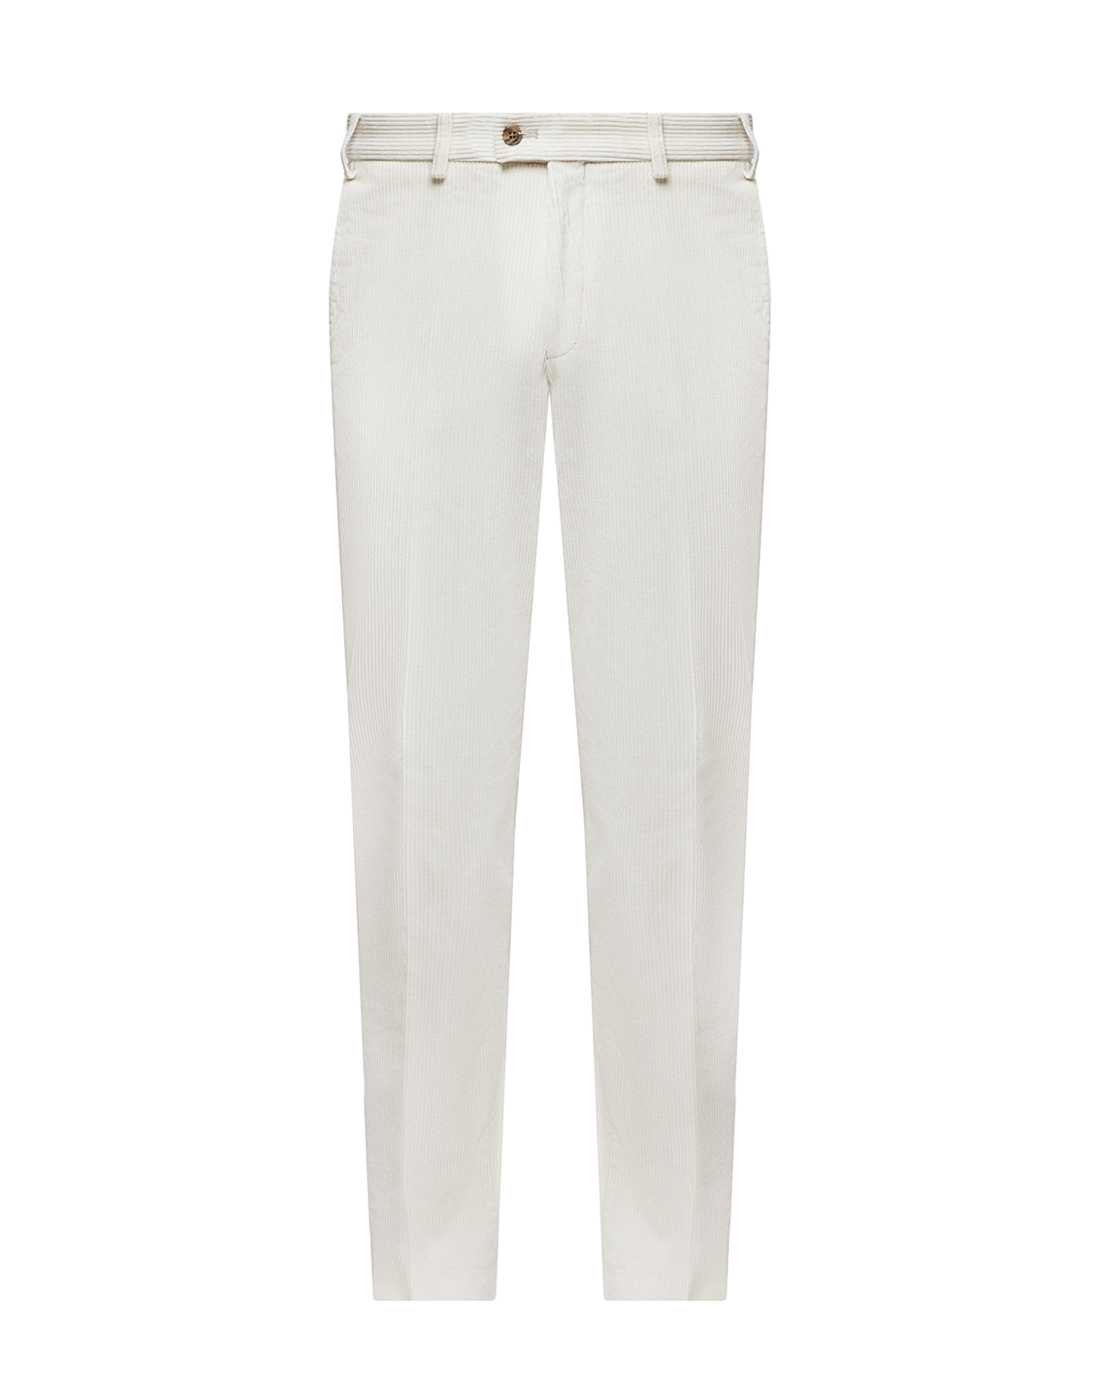 Мужские белые вельветовые брюки Hiltl  S52473 70 71700-1